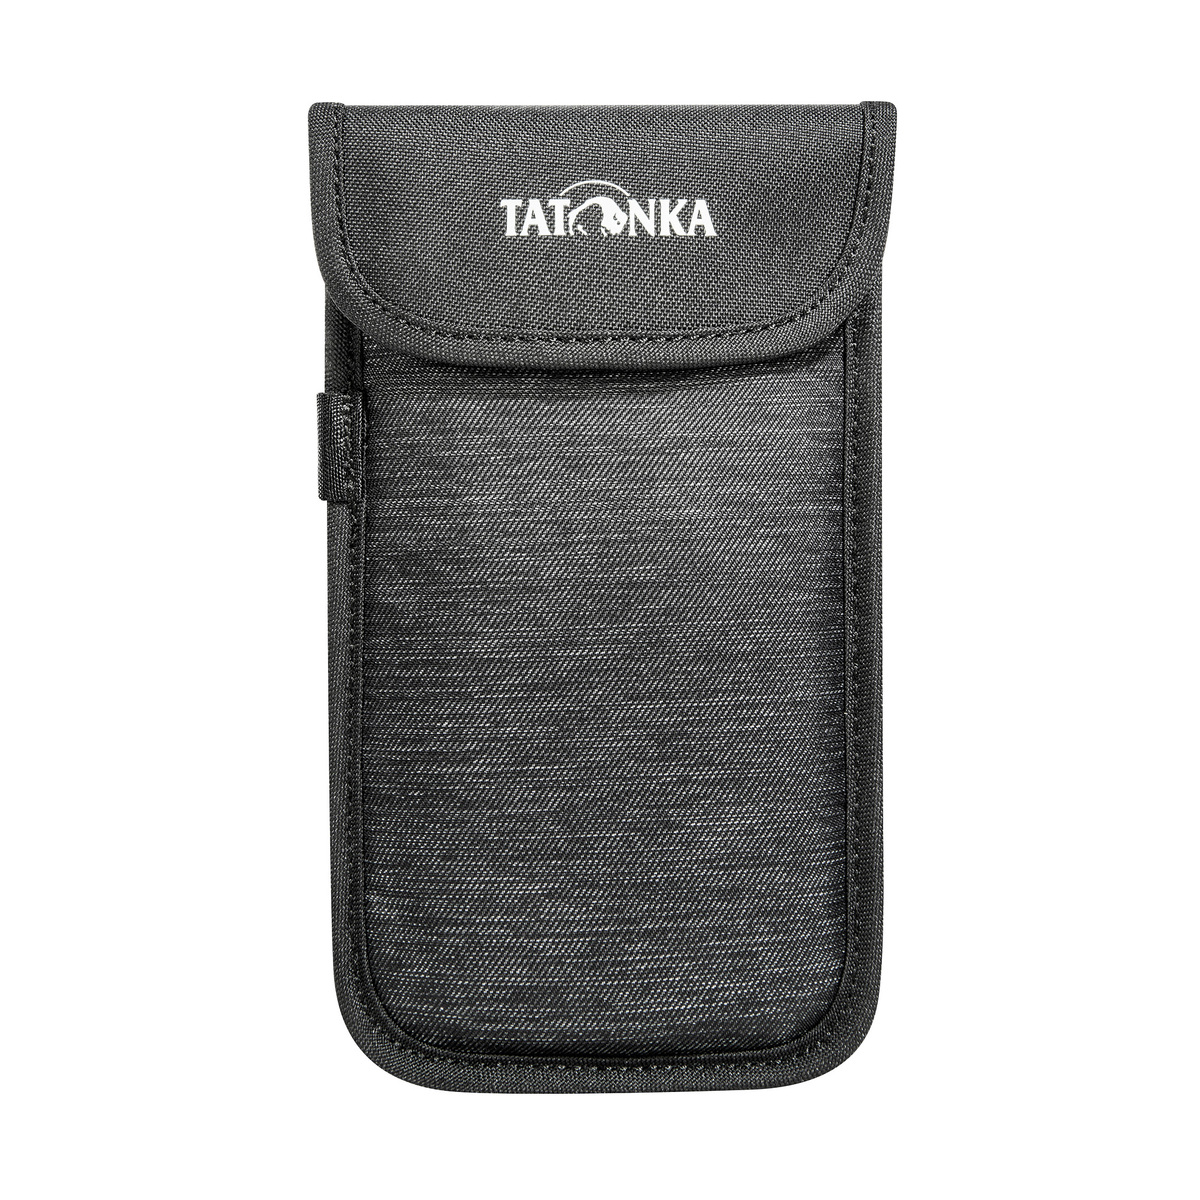 Tatonka Smartphone Case